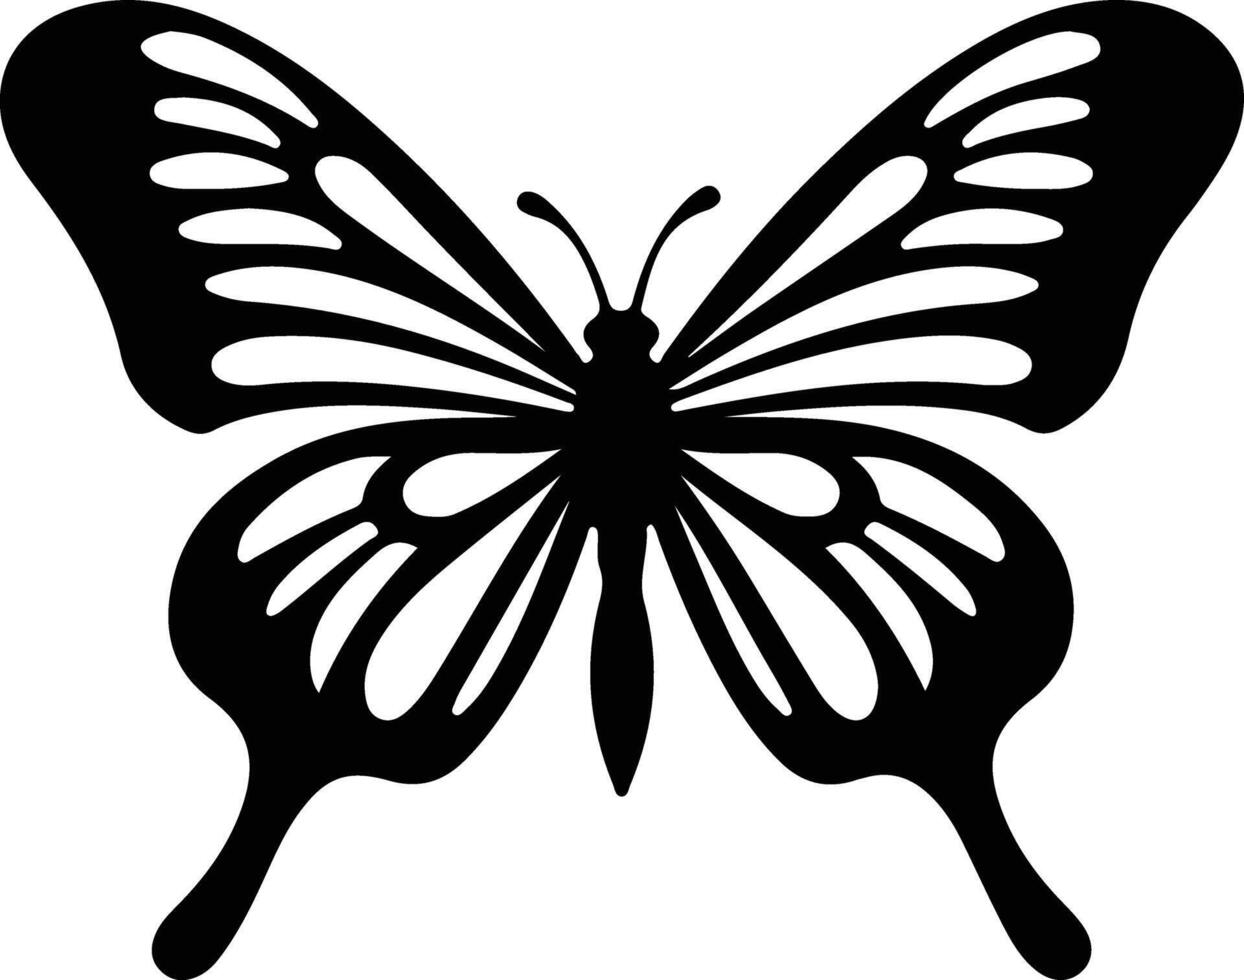 zebra longwing butterfly  black silhouette vector